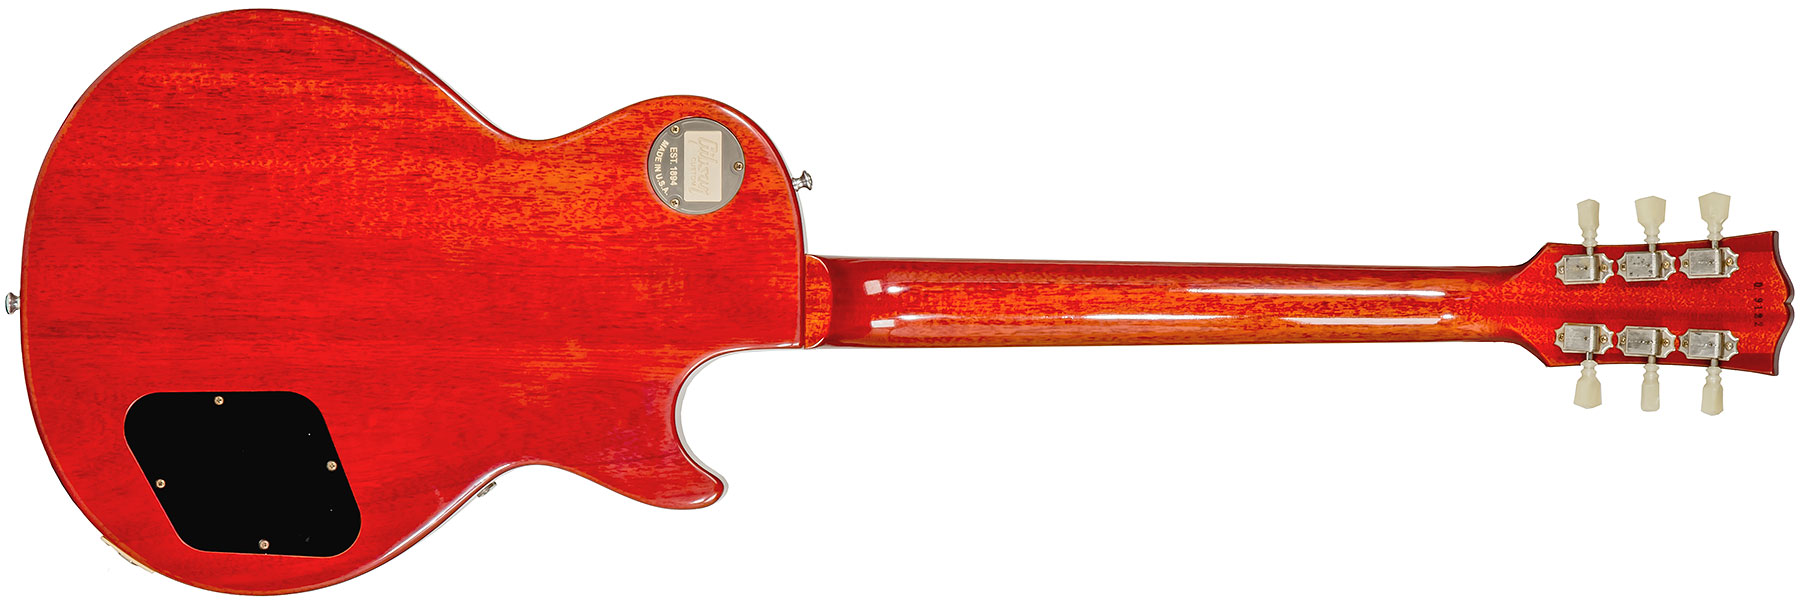 Gibson Custom Shop Les Paul Standard 1960 Reissue Lh Gaucher 2h Ht Rw #09122 - Vos Tangerine Burst - Guitarra electrica para zurdos - Variation 1